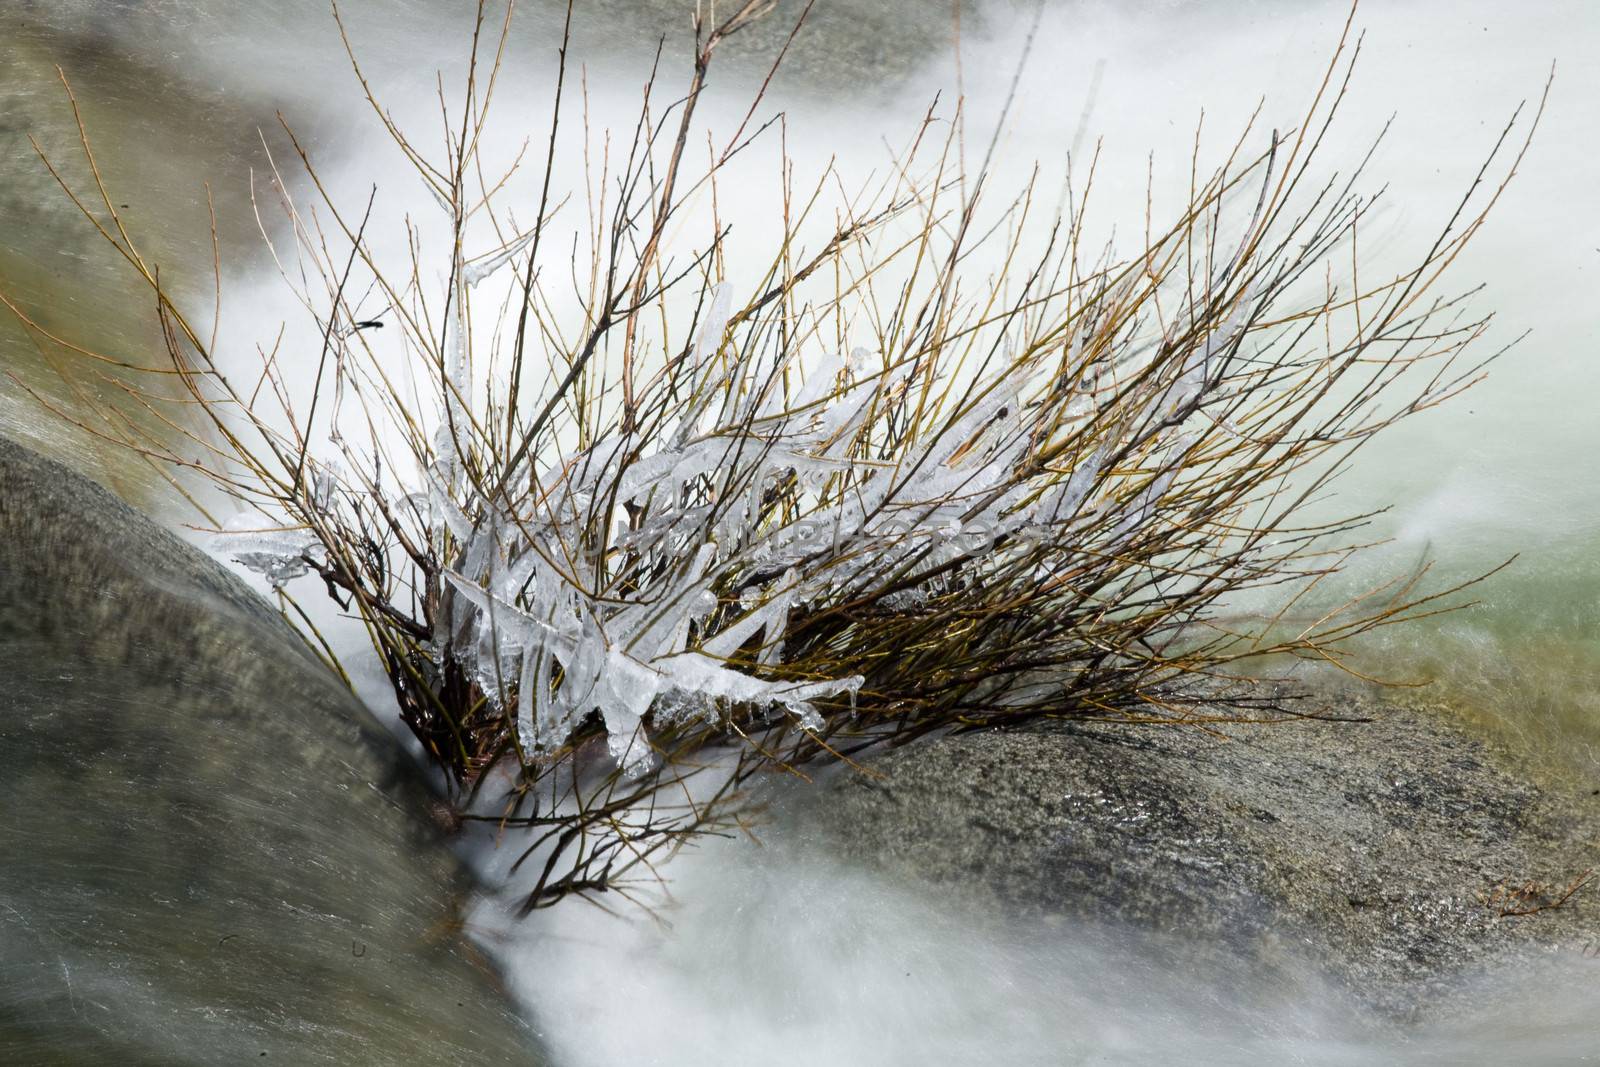 Water flowing through rocks, Yosemite National Park, California, USA